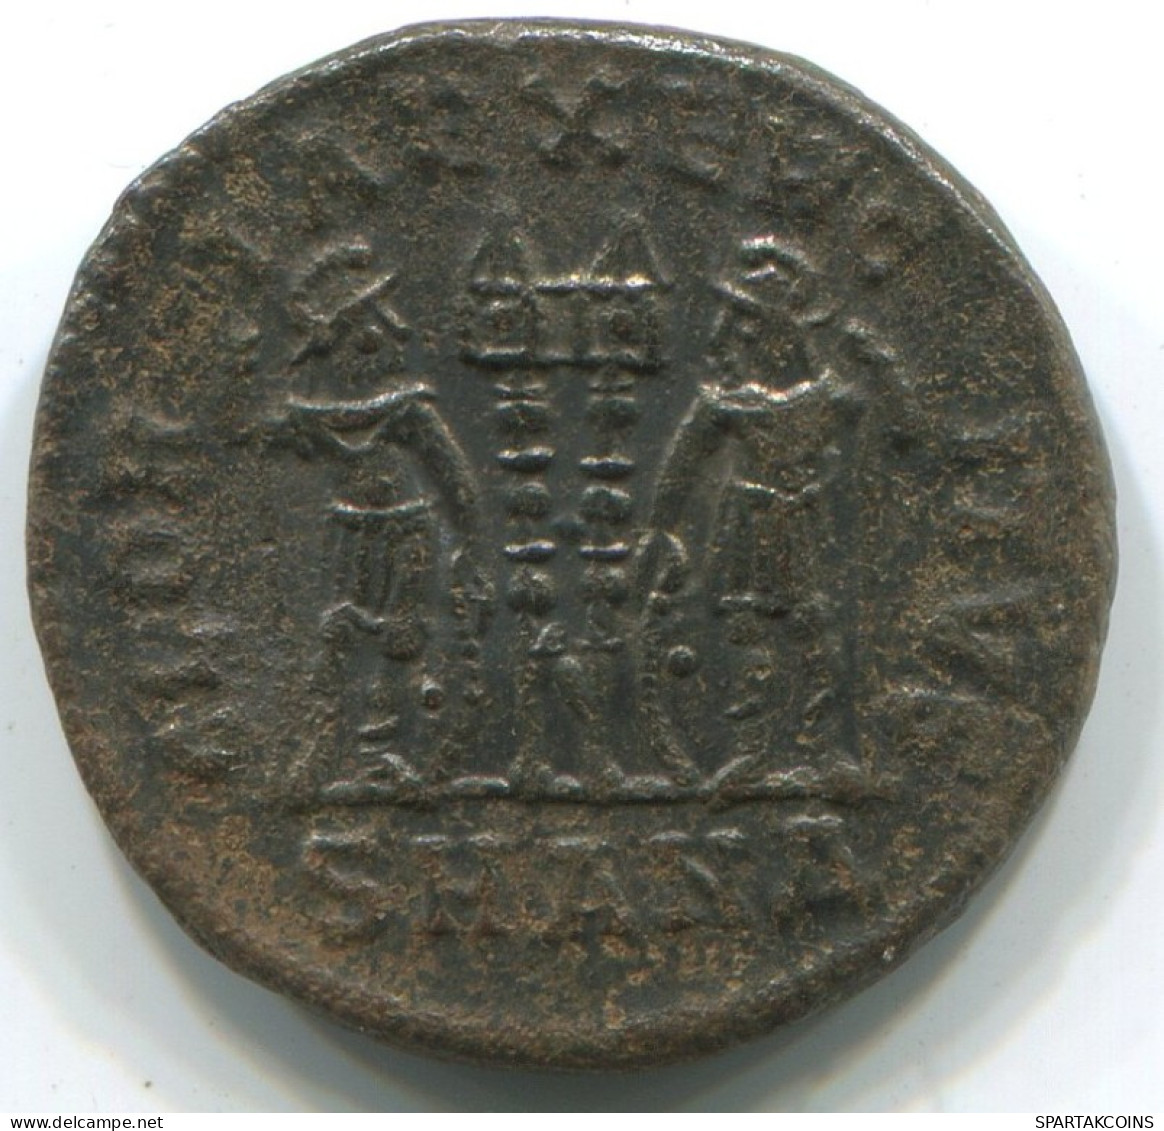 Authentische Antike Spätrömische Münze RÖMISCHE Münze 2.7g/17mm #ANT2272.14.D.A - El Bajo Imperio Romano (363 / 476)